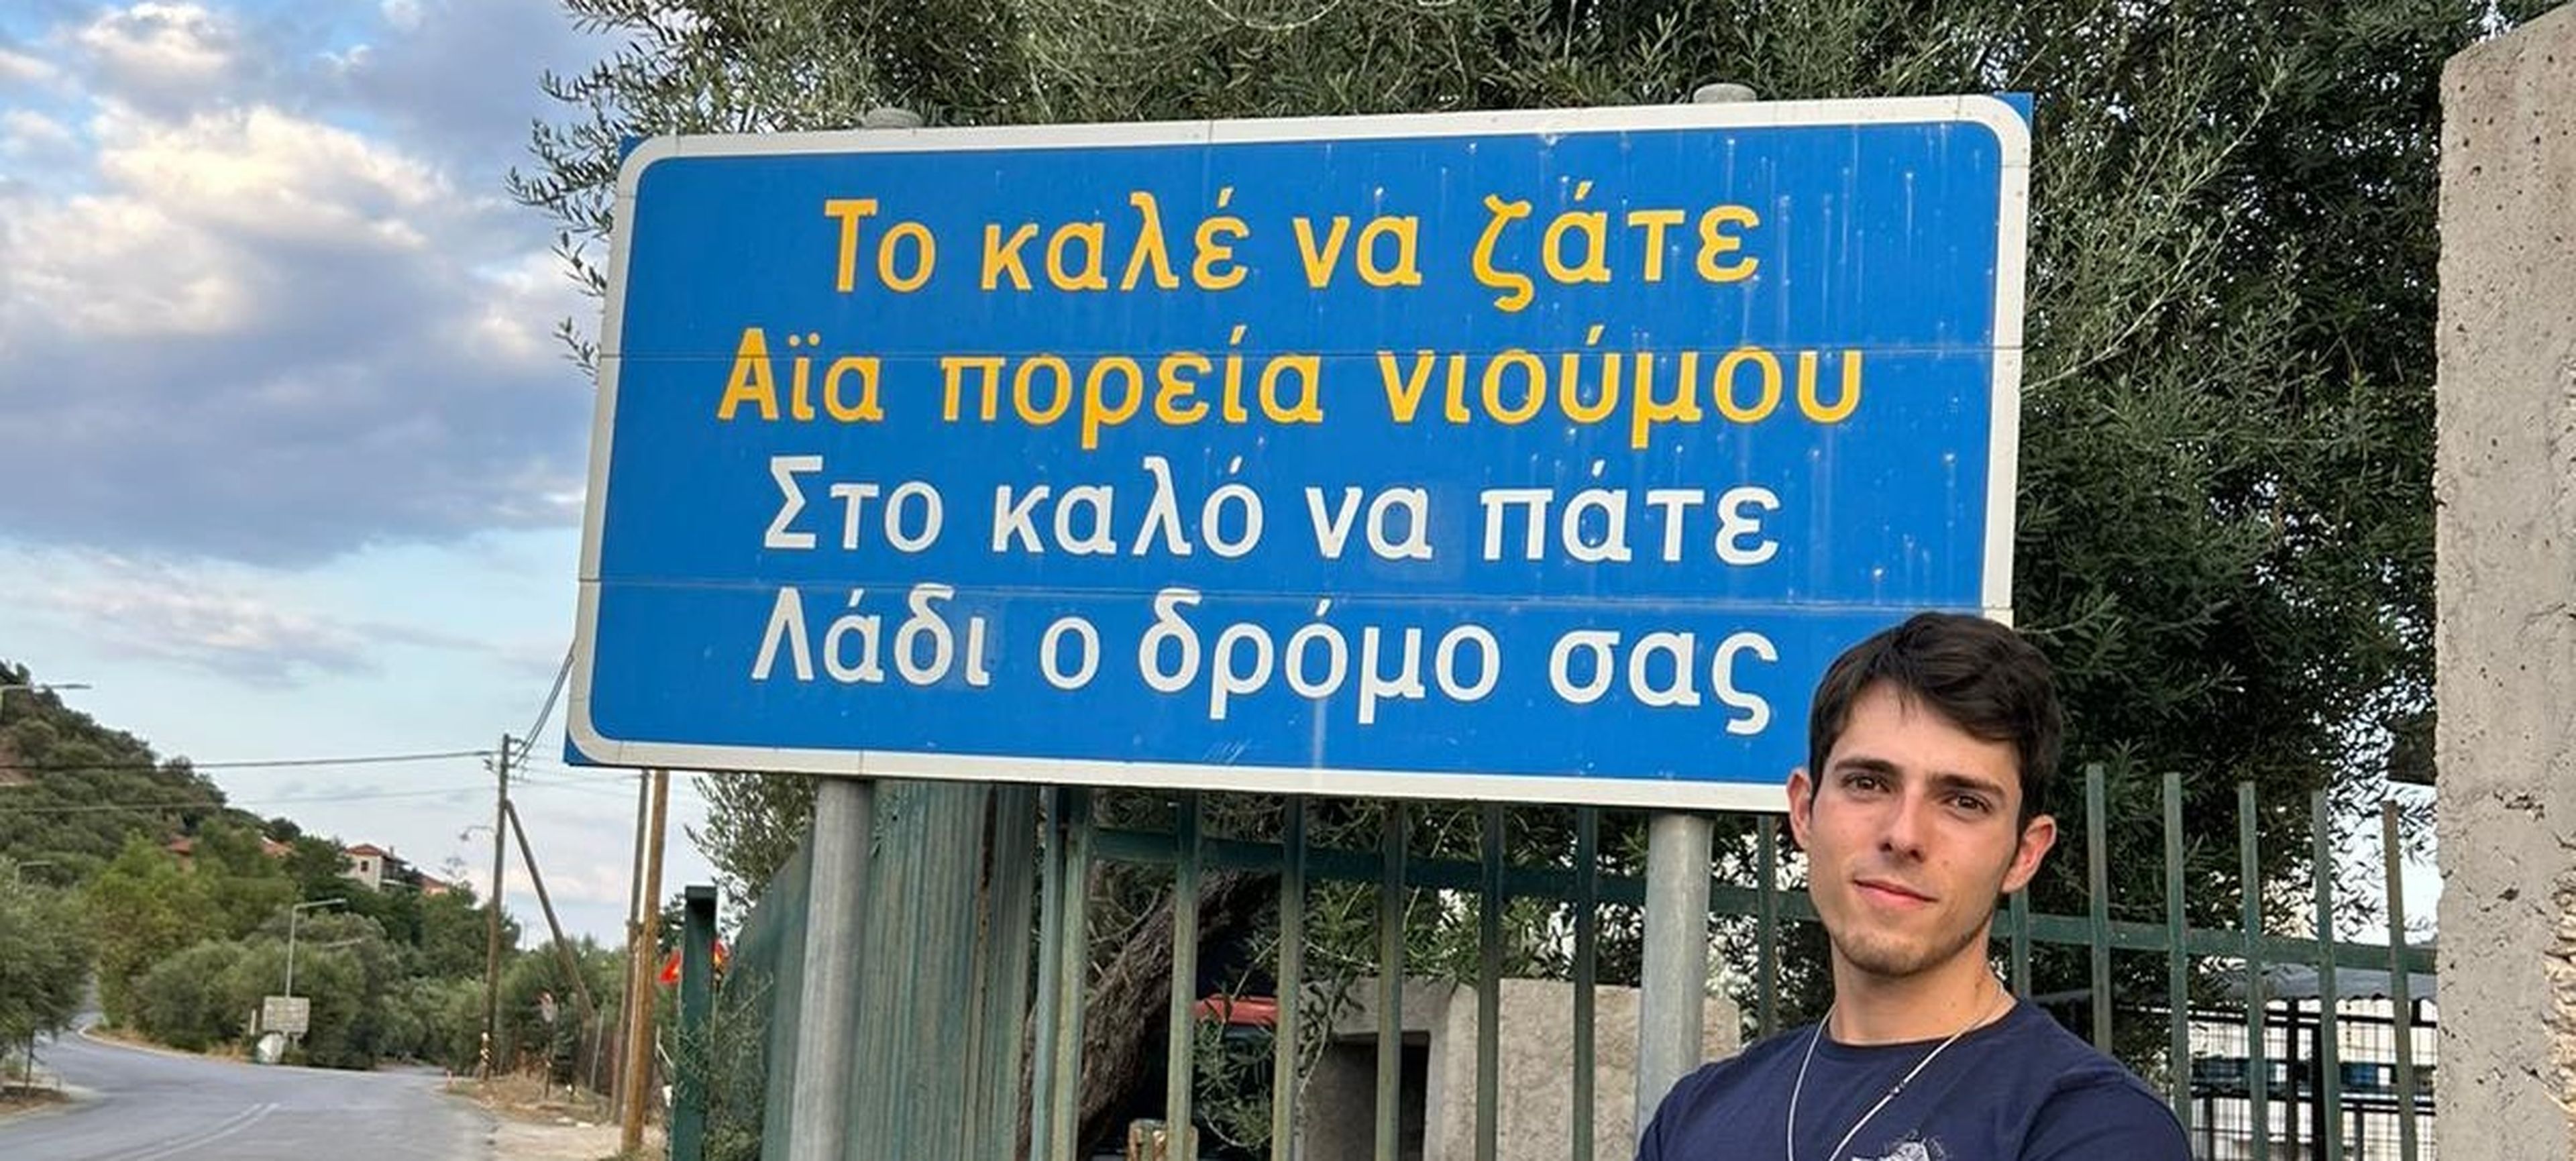 Jaime García Chaparro posa en la pueblo de Leonidio, Grecia, con un cartel que dice en griego moderno y en tsakonio: "Que te vaya bien. Que tu camino sea aceite". La expresión se utiiza para desear a alguien buen viaje.